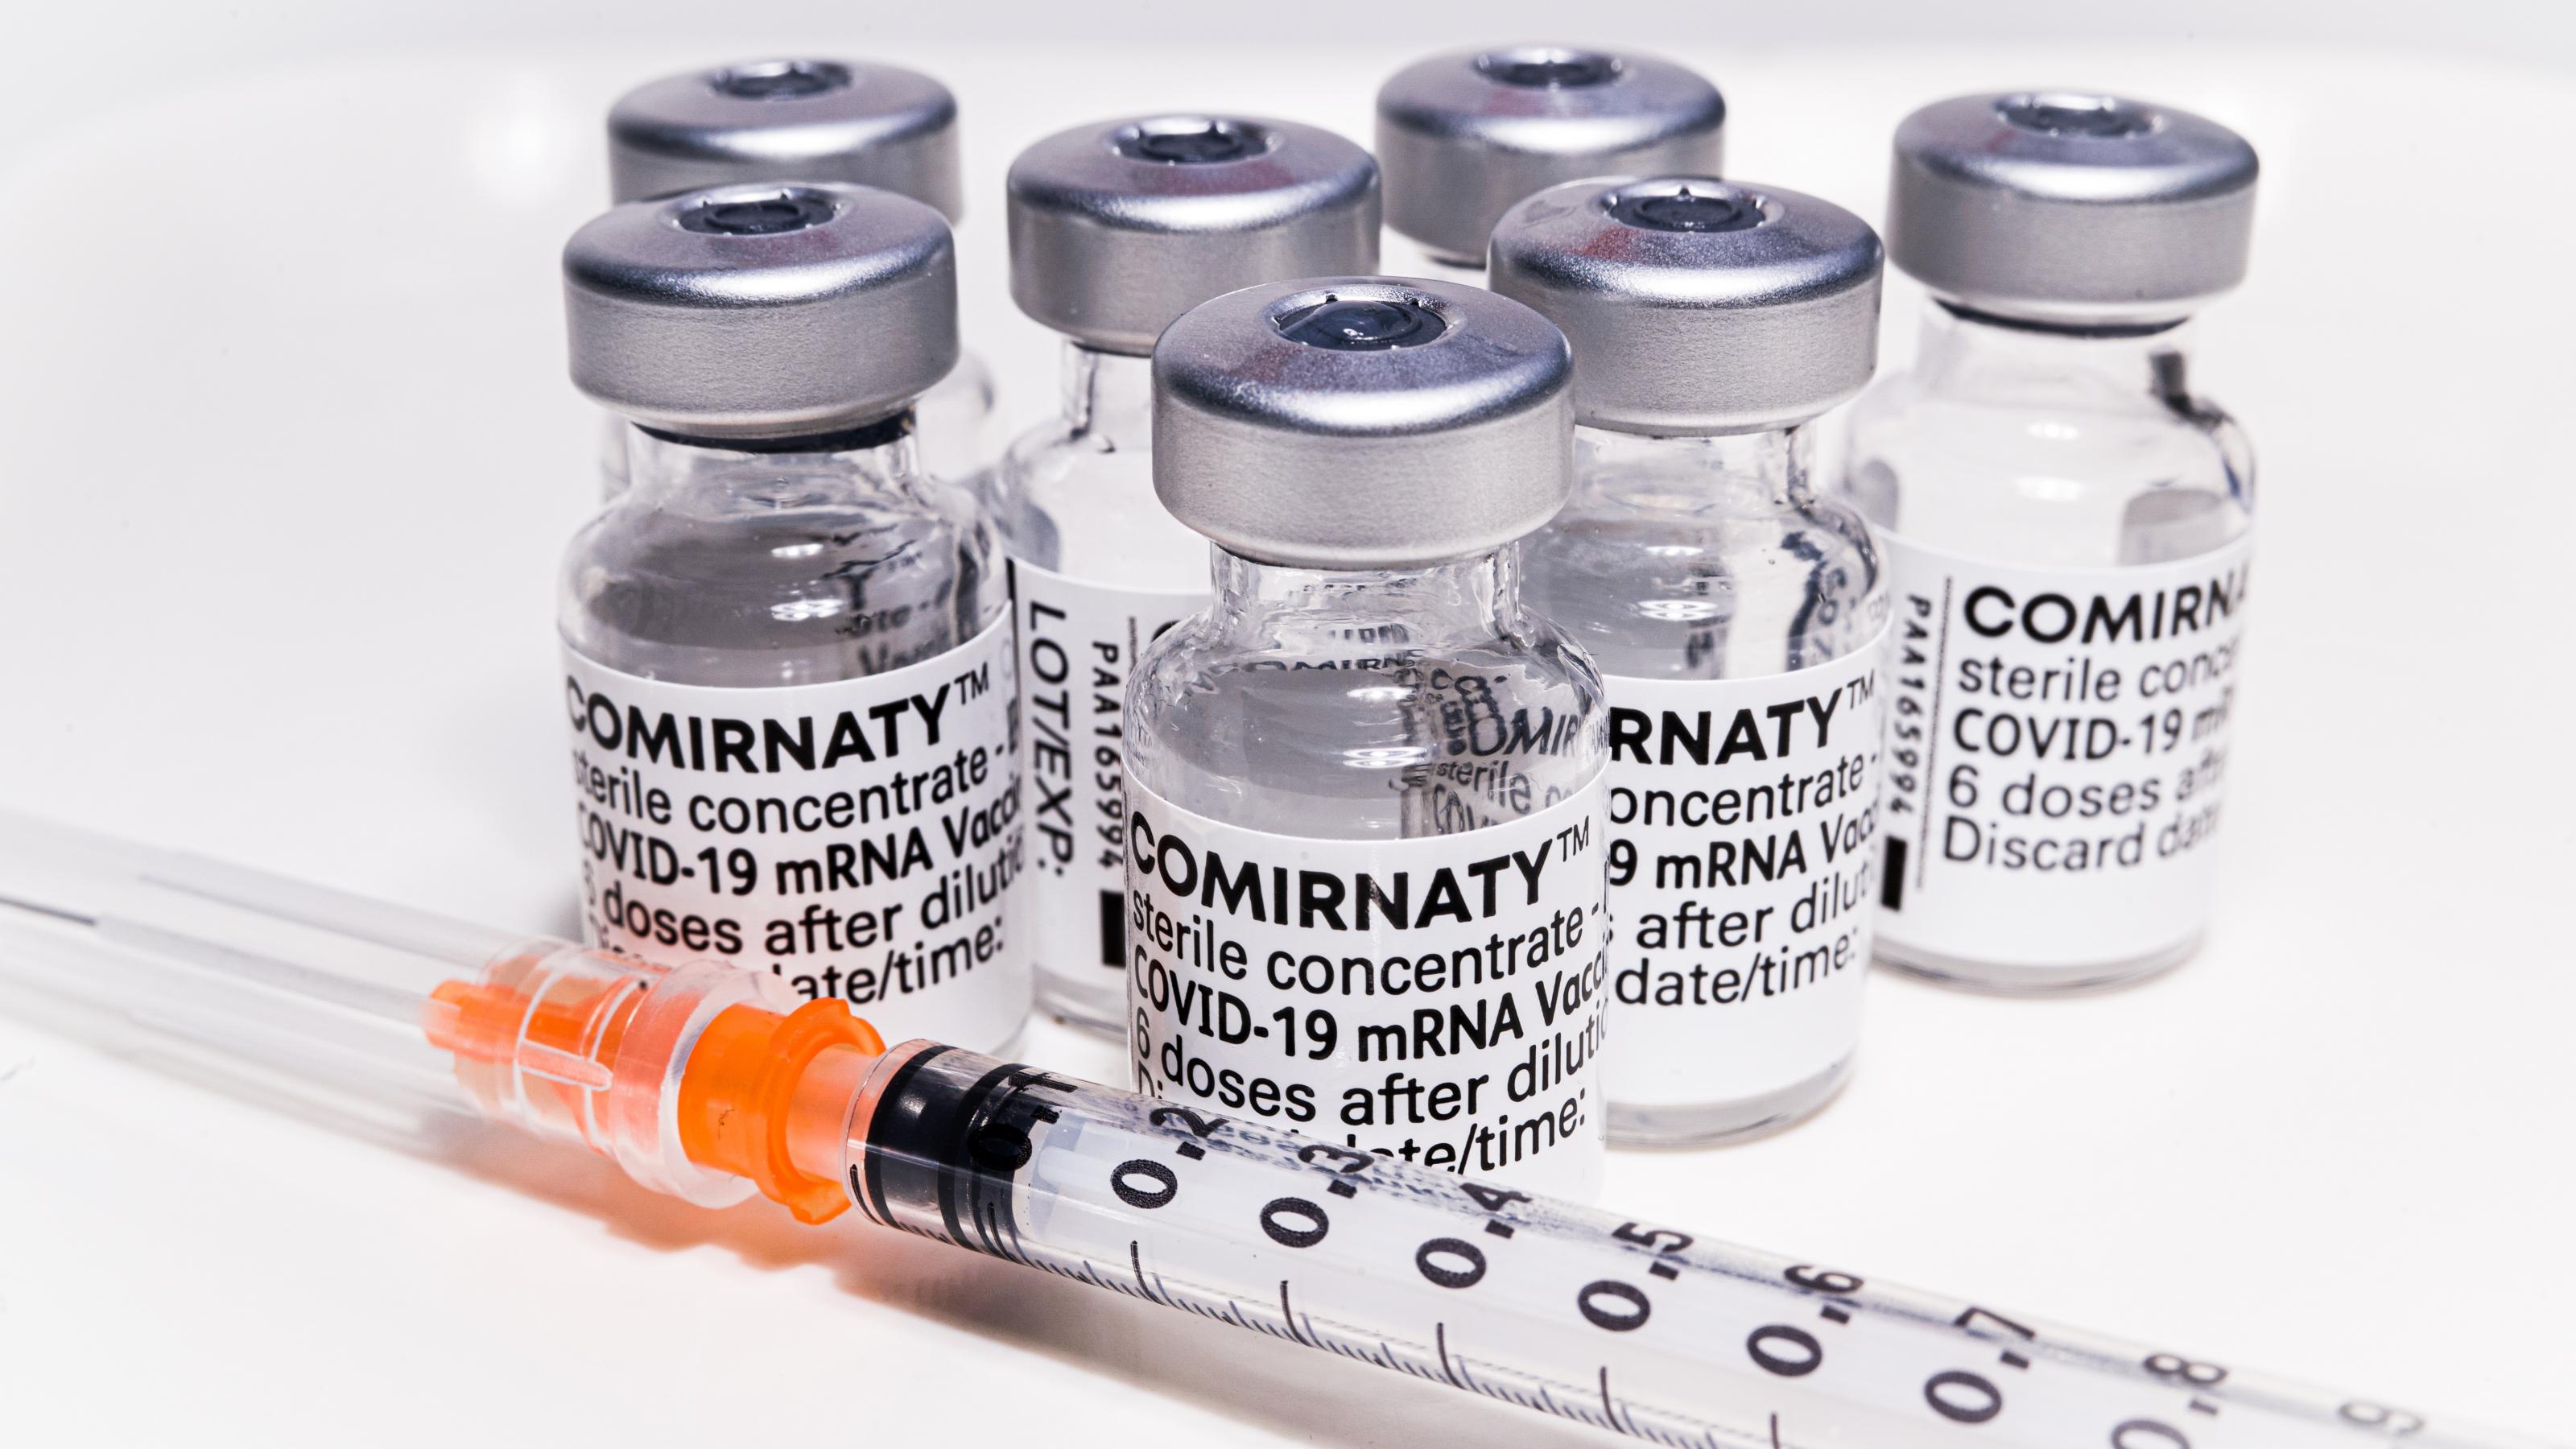 Auf dem Foto sind mehrere Ampullen mit dem mRNA-Impfstoff Corminaty abgebildet. Darunter liegt eine Impfspritze.